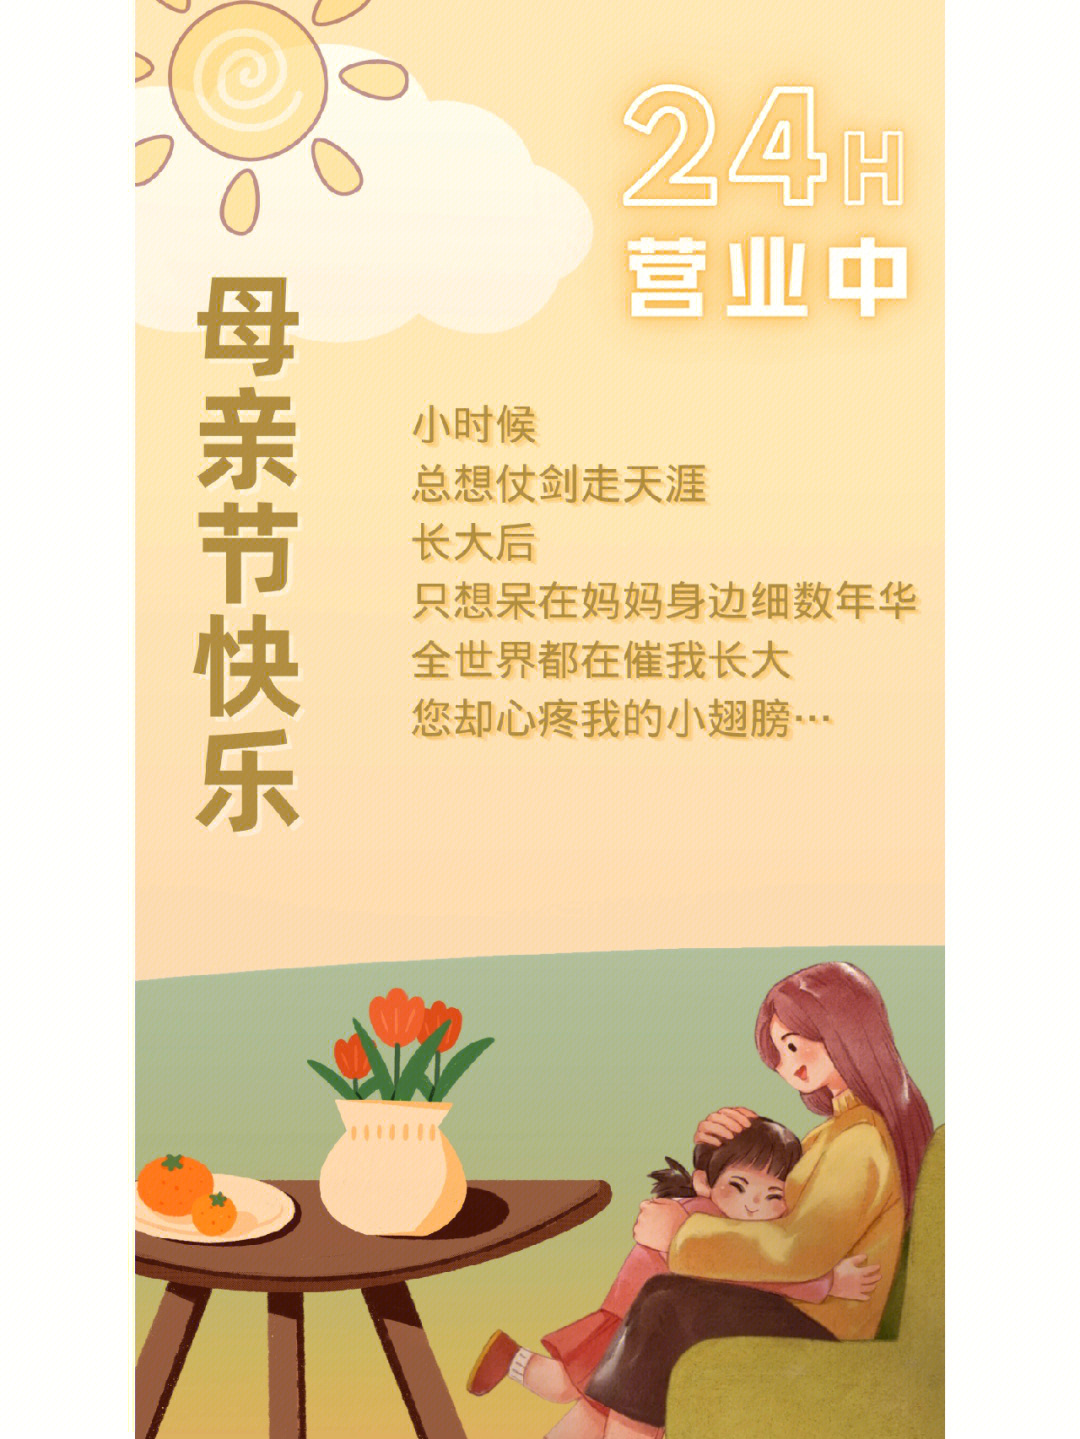 母亲节电饭锅文案广告图片